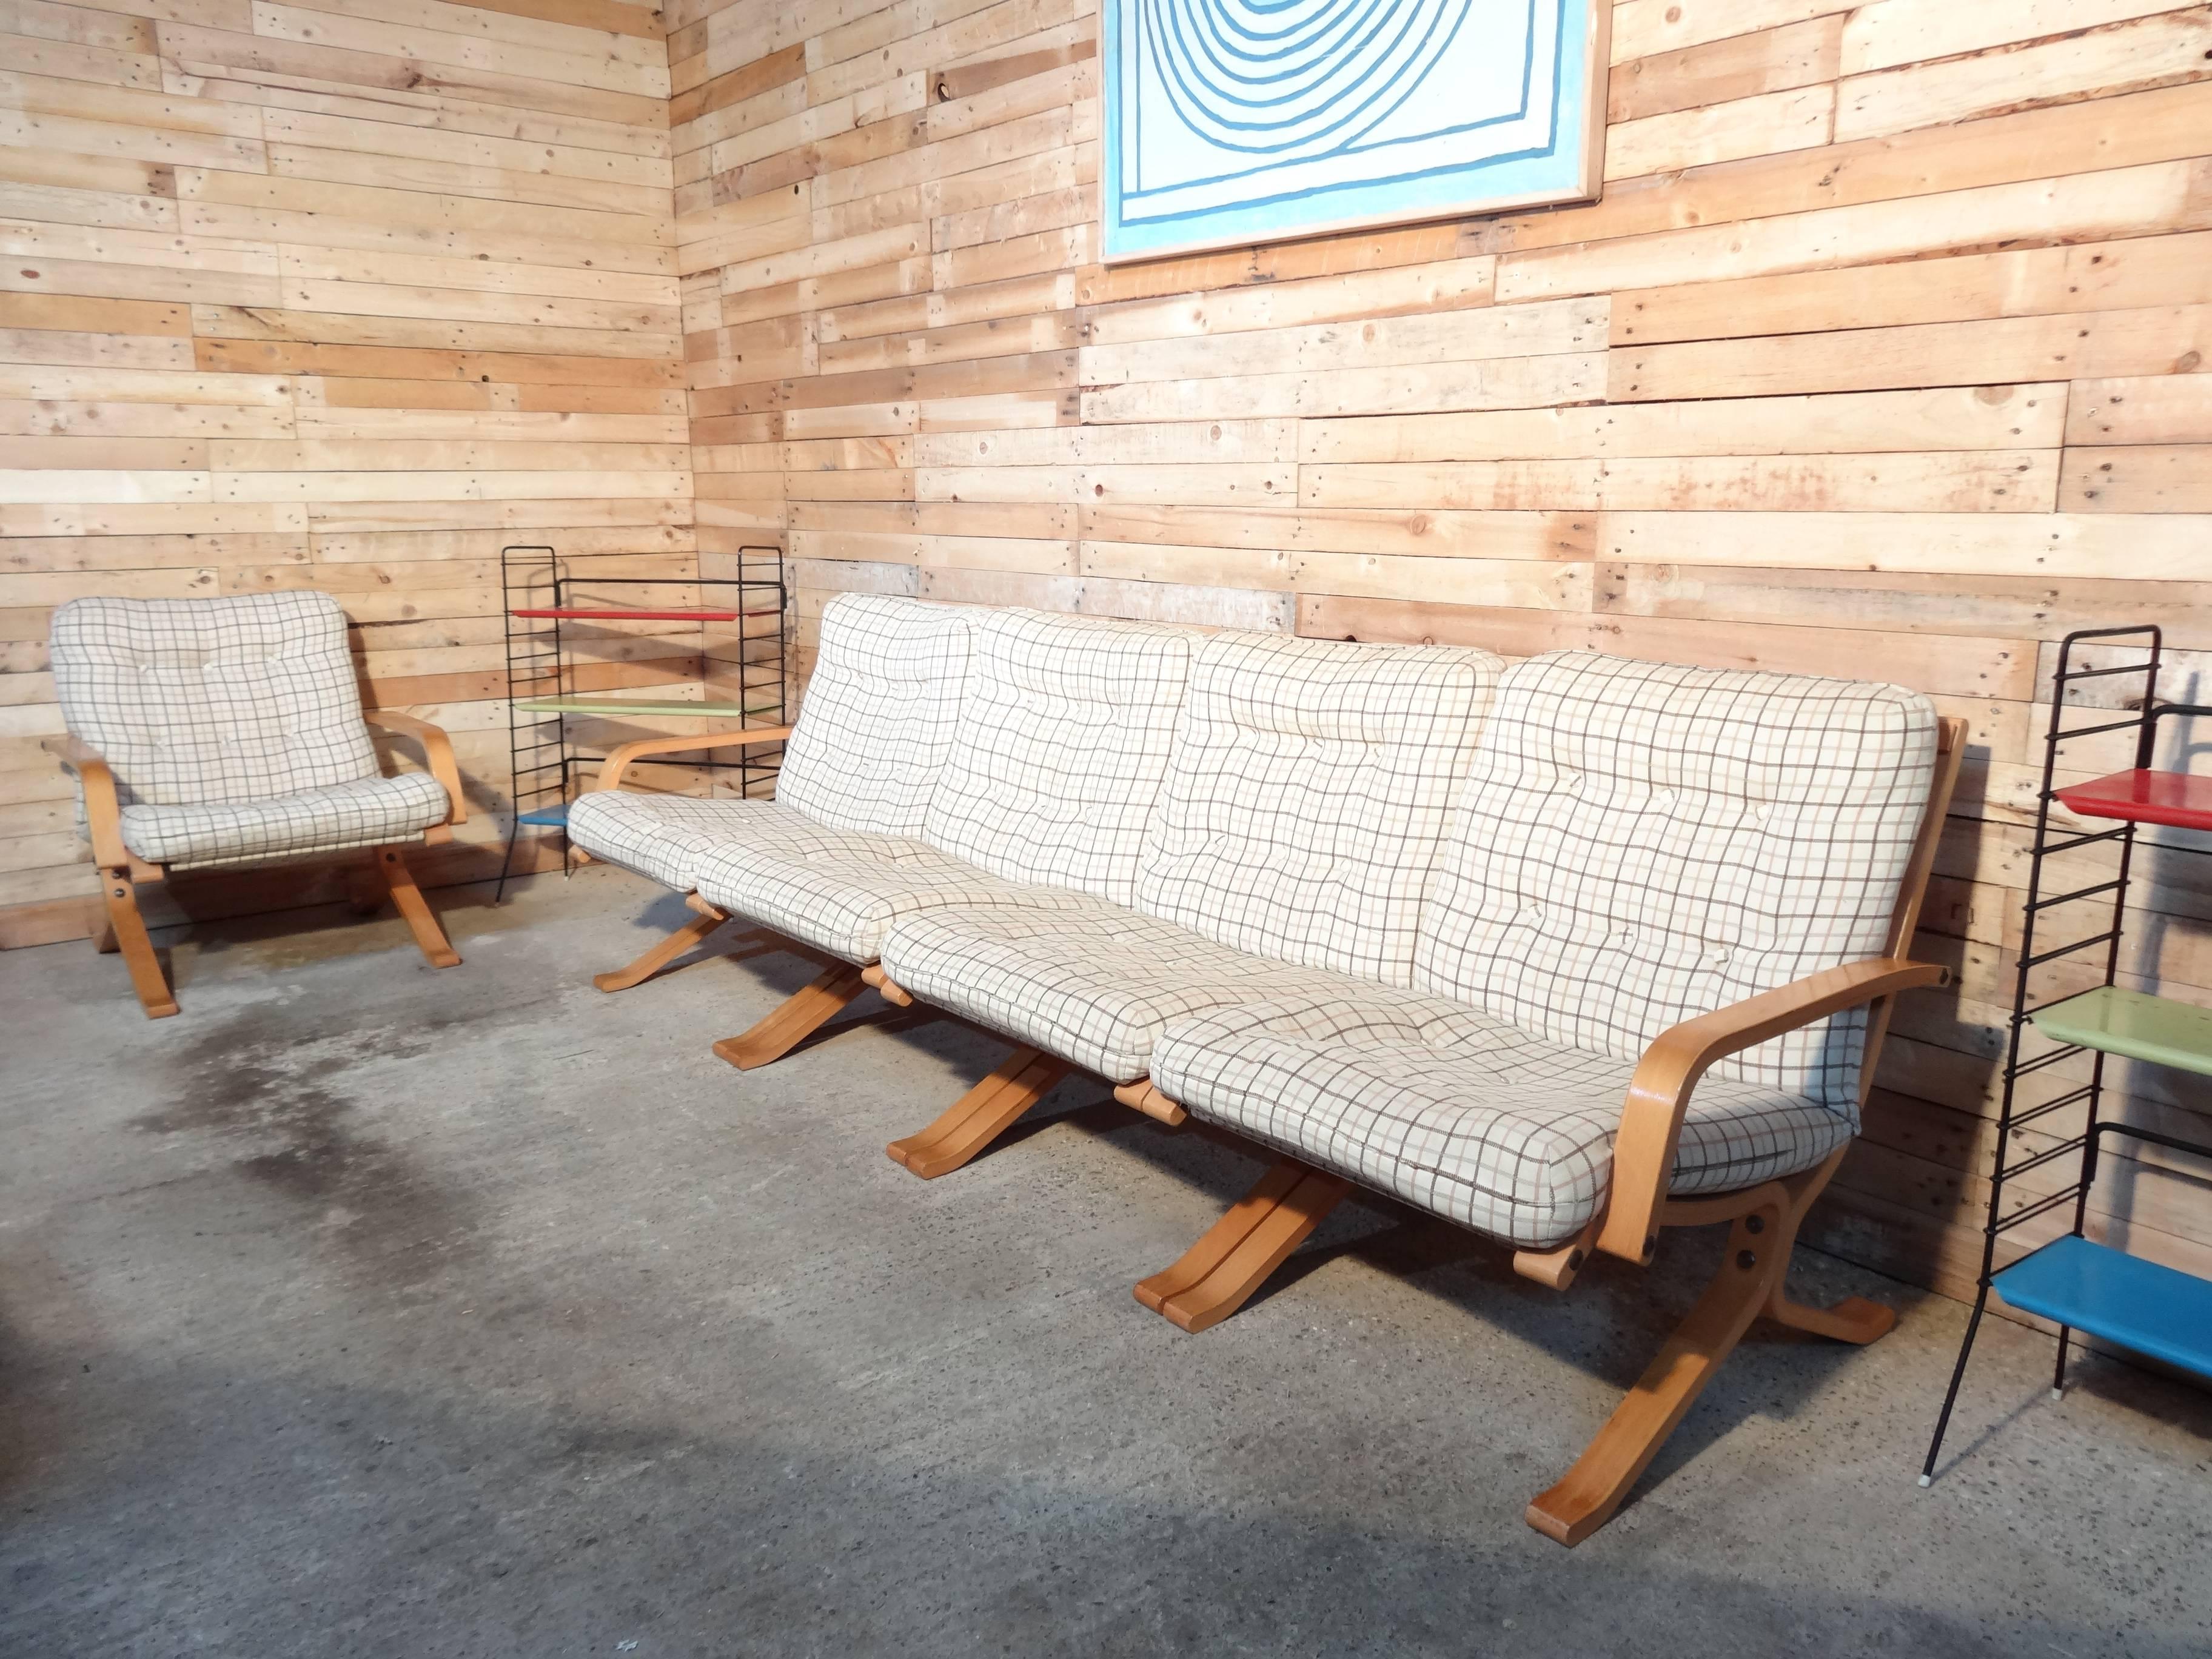 1960 rétro vintage original scandinave Ingmar Relling conçu bentwood inhabituel bois clair siesta quatre sièges canapé ou chaises recouvert d'un tissu rétro clair.

Ce canapé est très inhabituel et recherché, nous n'en avons pas vu d'autres à vendre